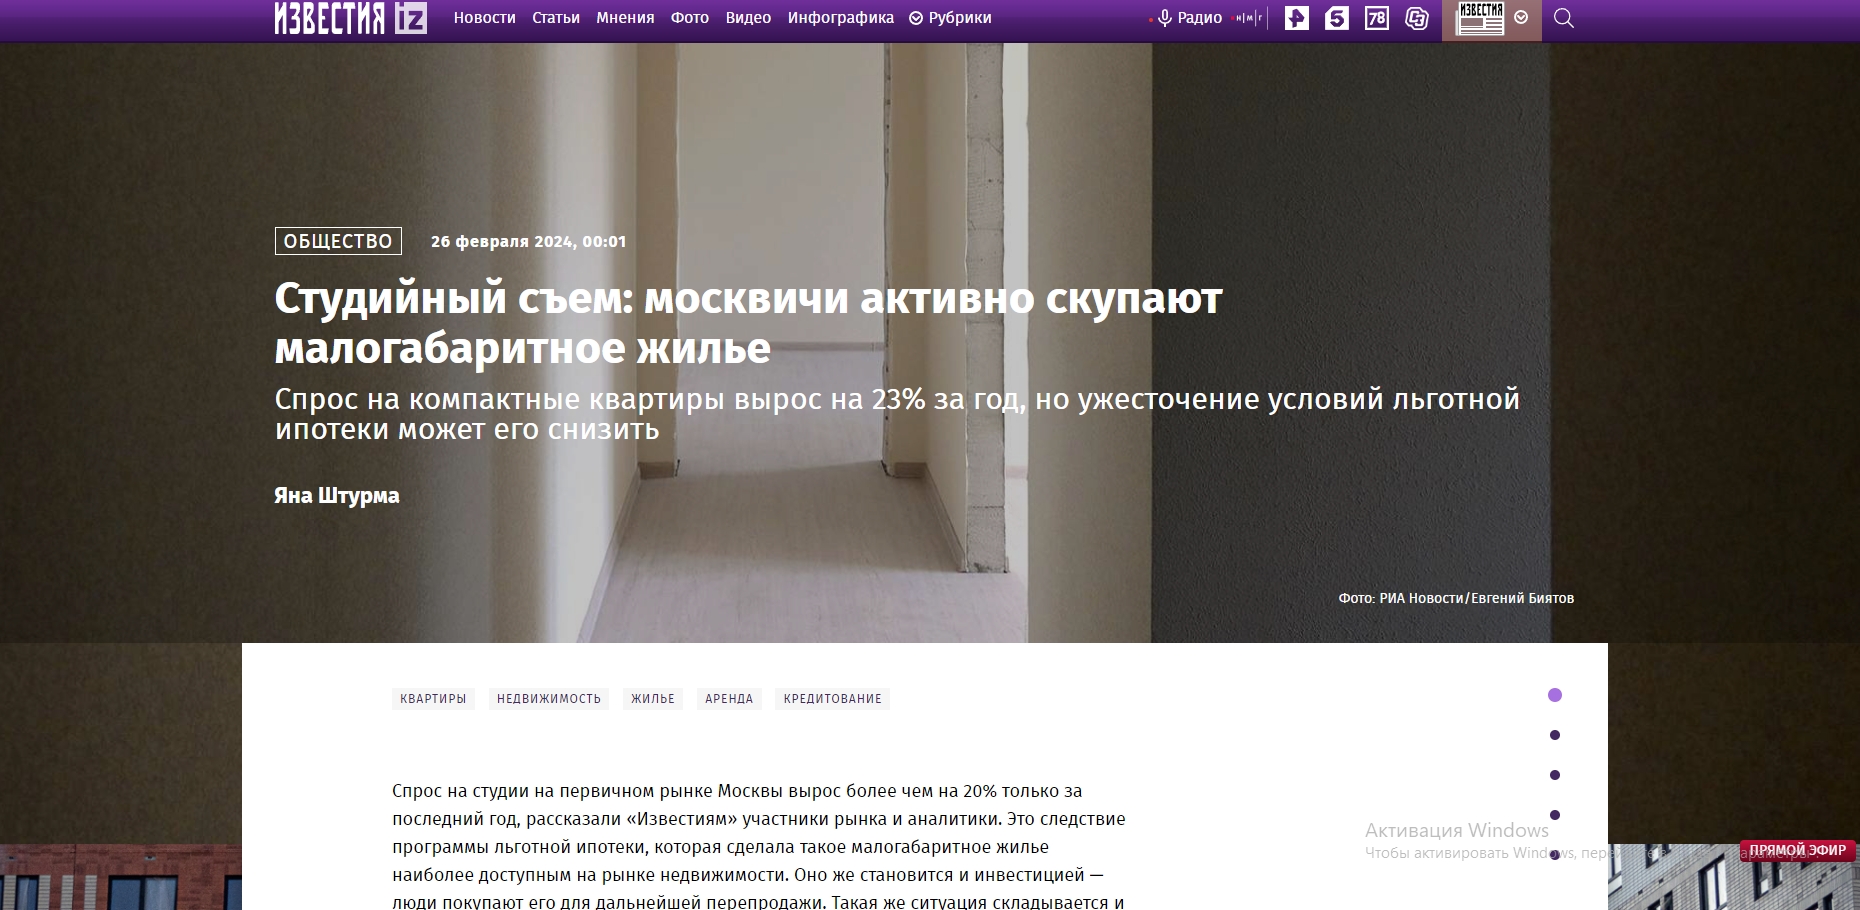 Студийный съем: москвичи активно скупают малогабаритное жилье